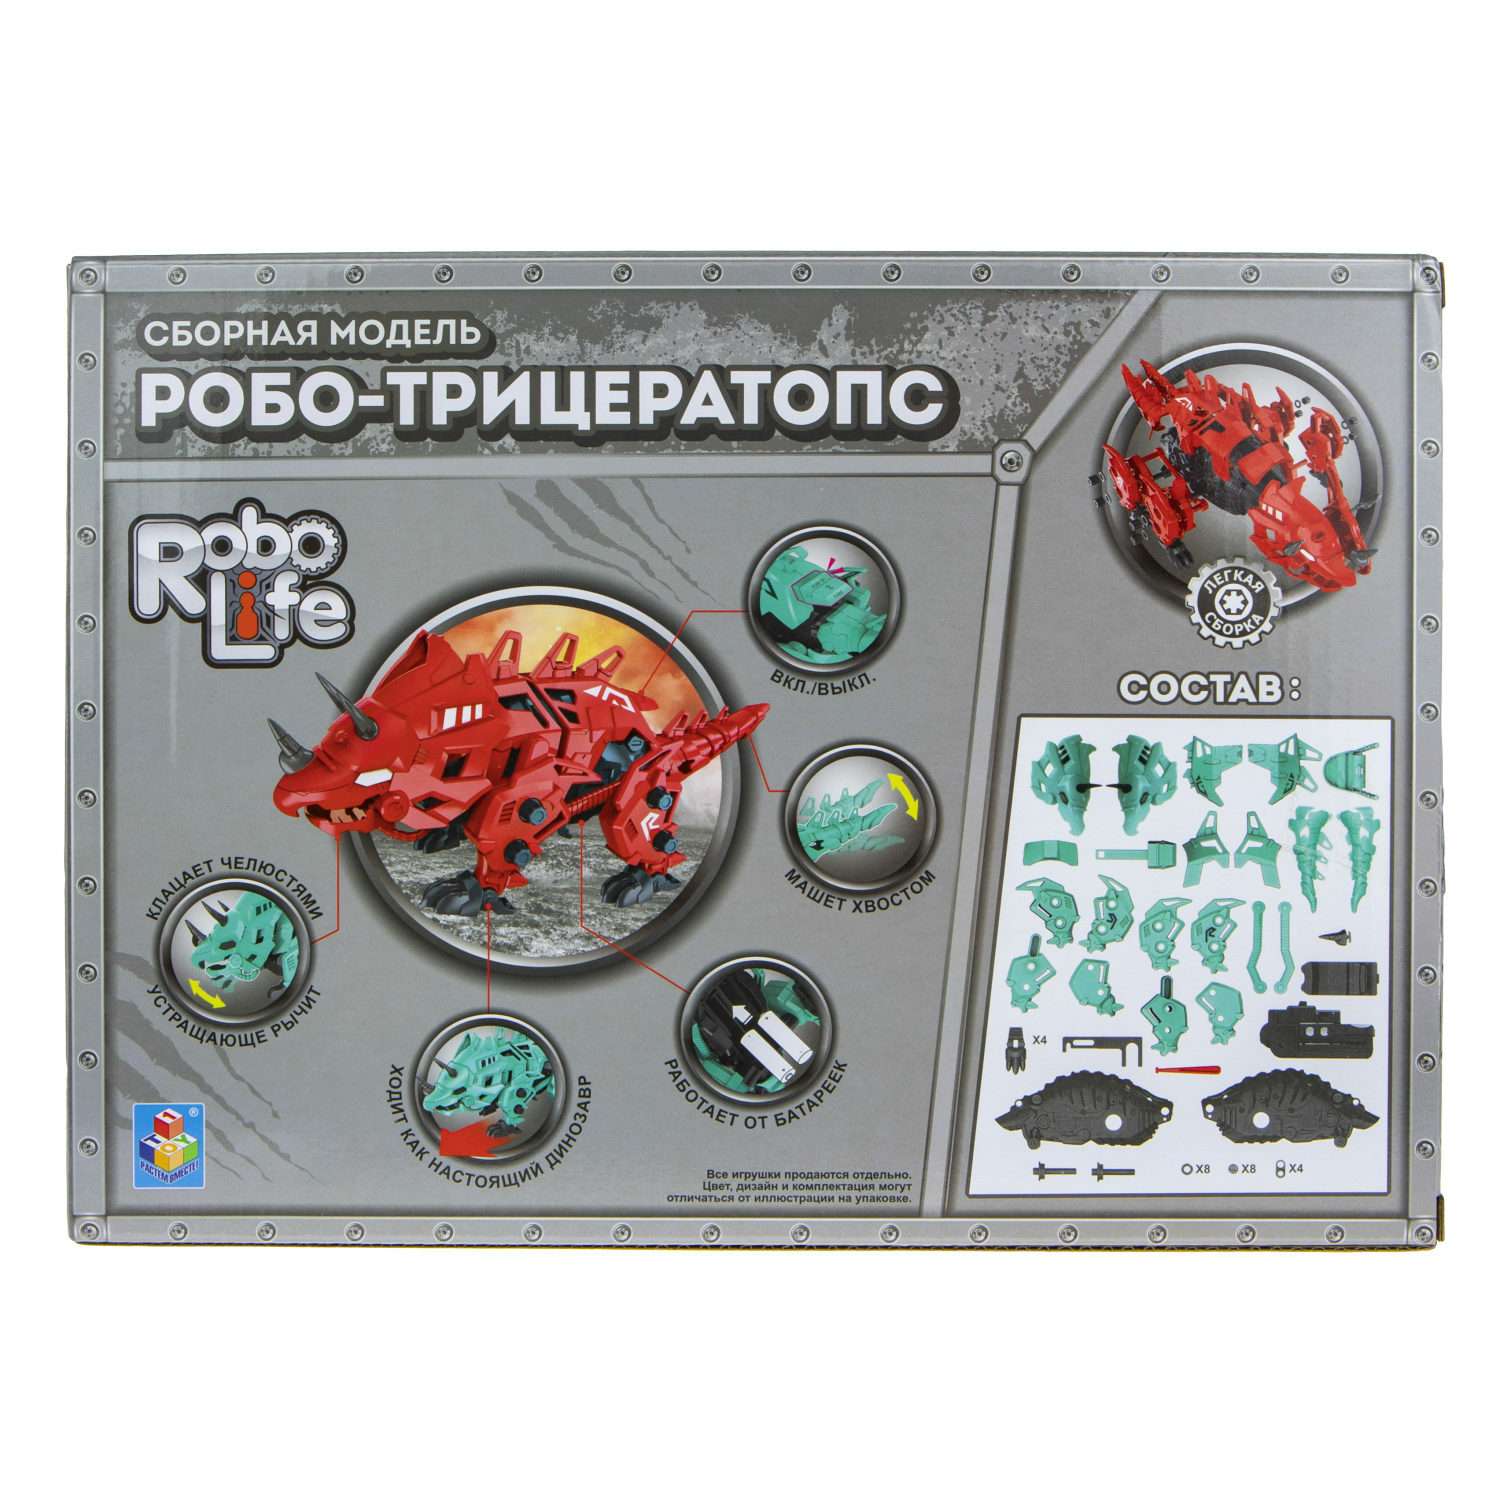 Интерактивная игрушка Robo Life Роботрицератопс 54 детали сборная модель - фото 5